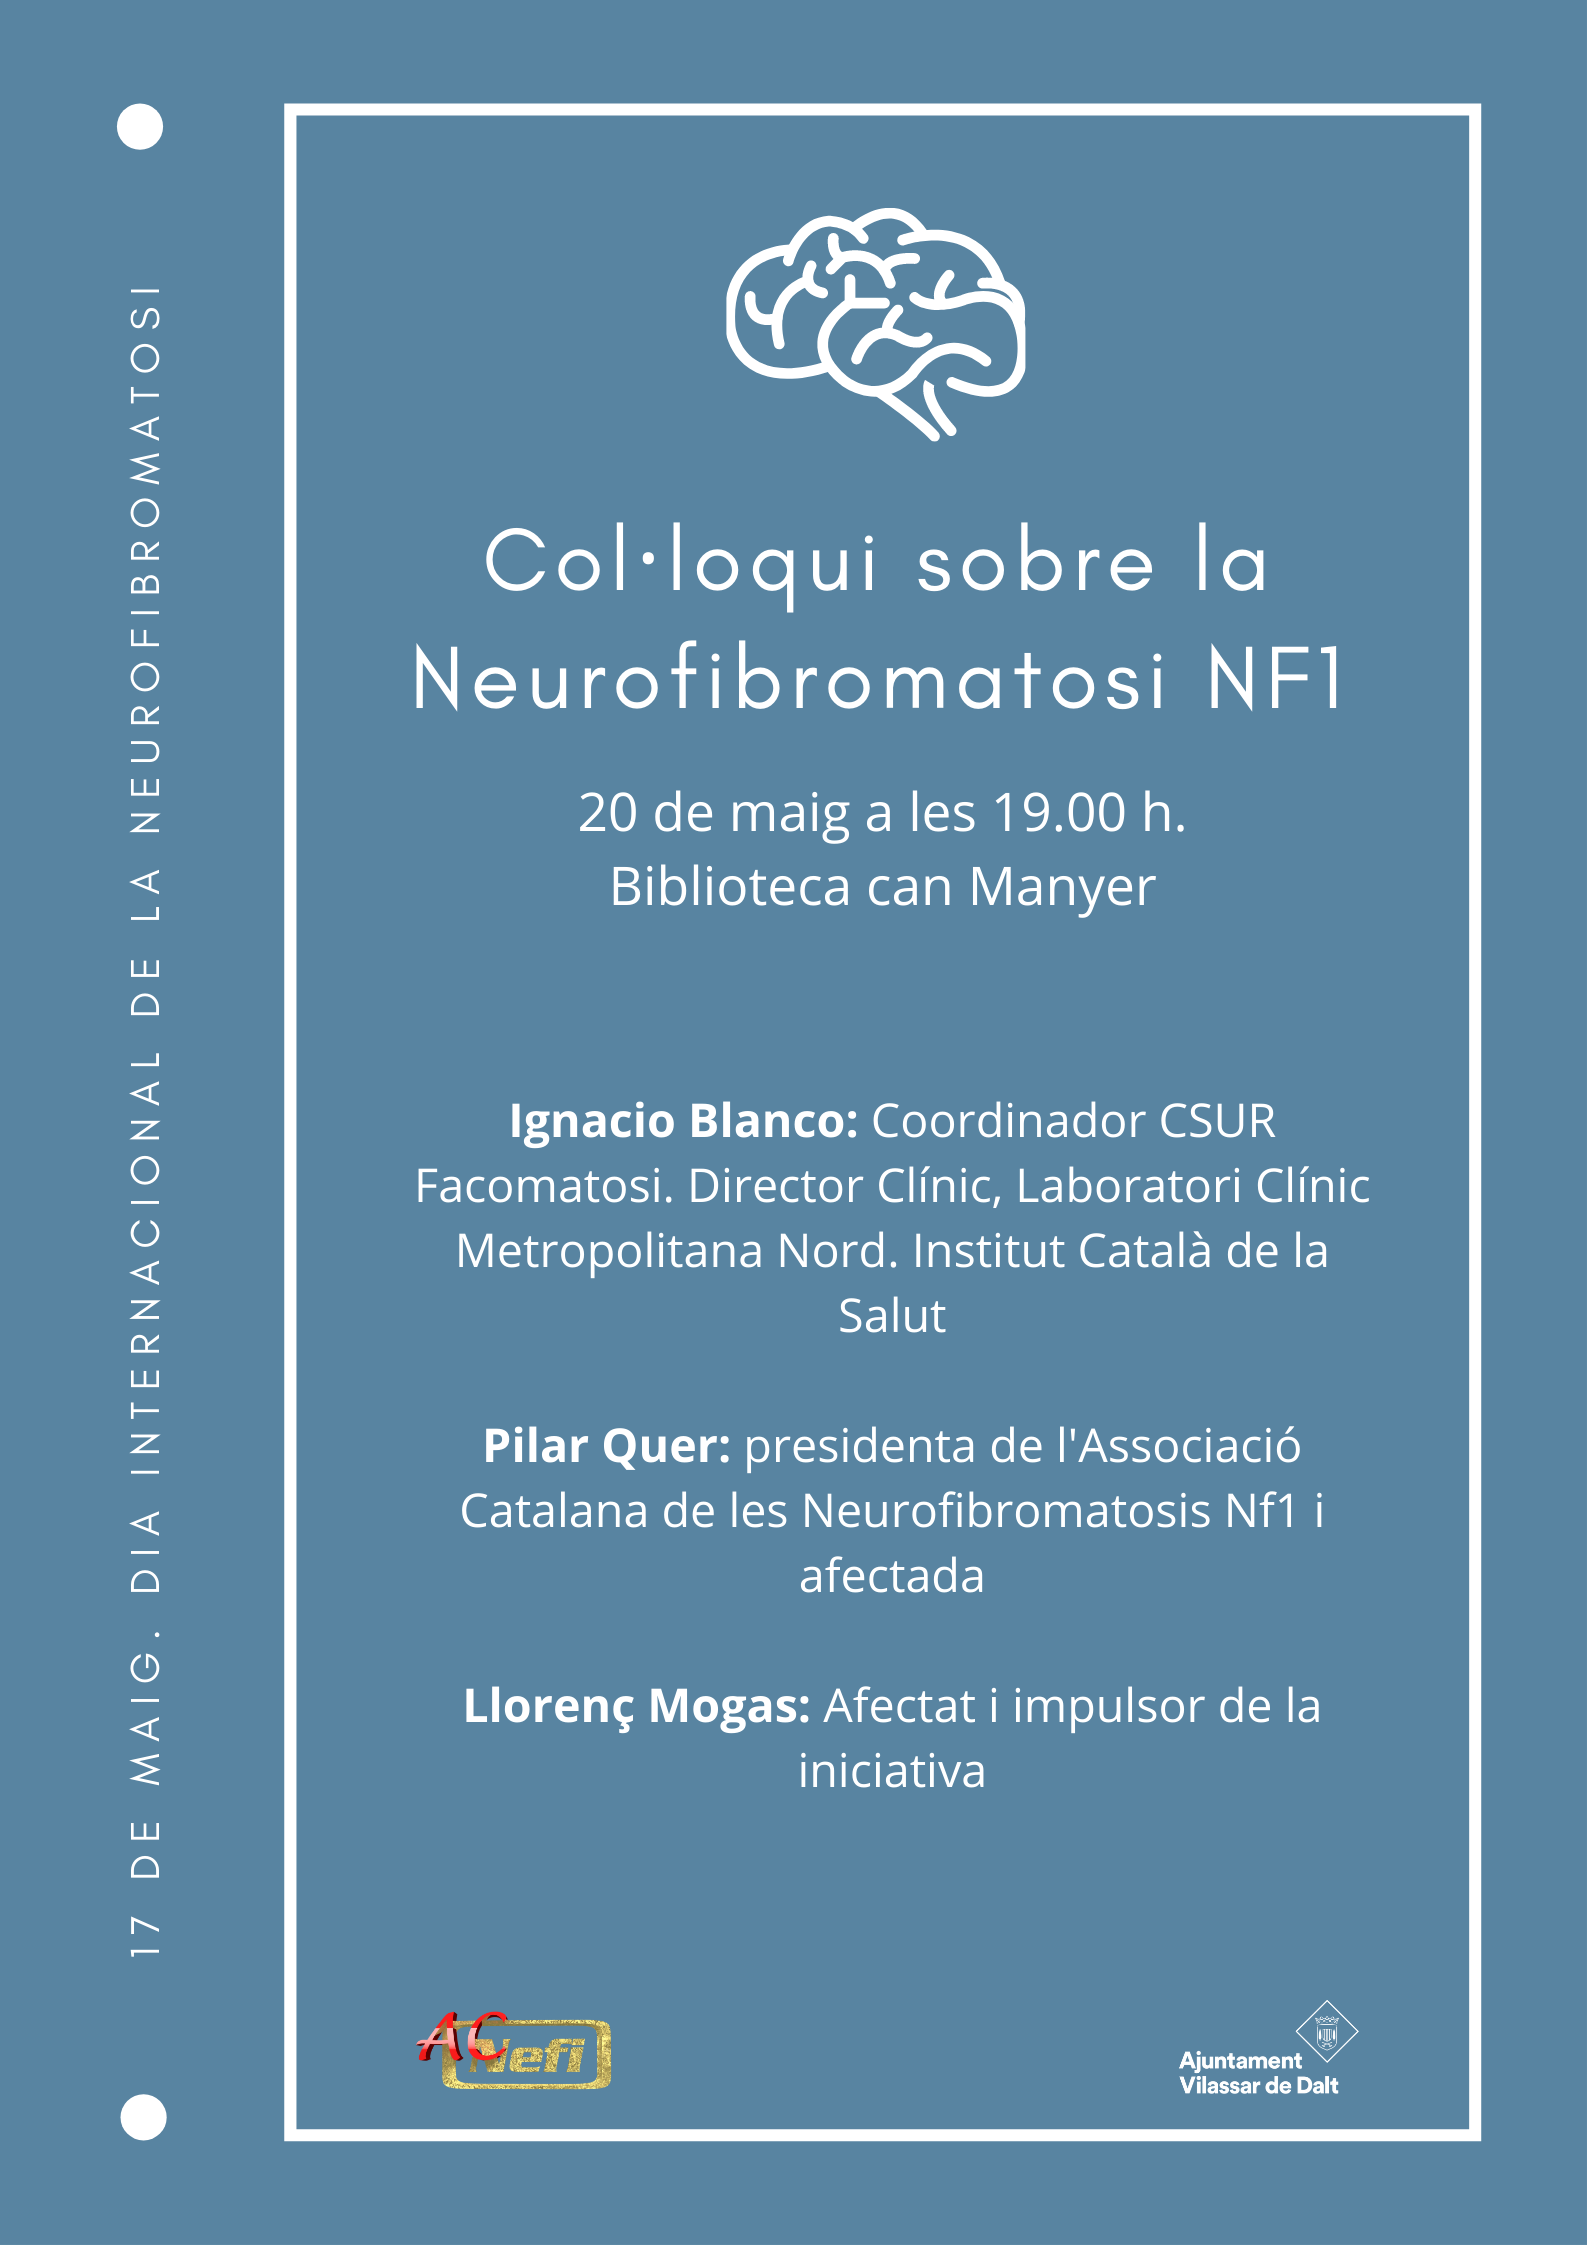 Col·loqui sobre la Neurofibromatori NF1